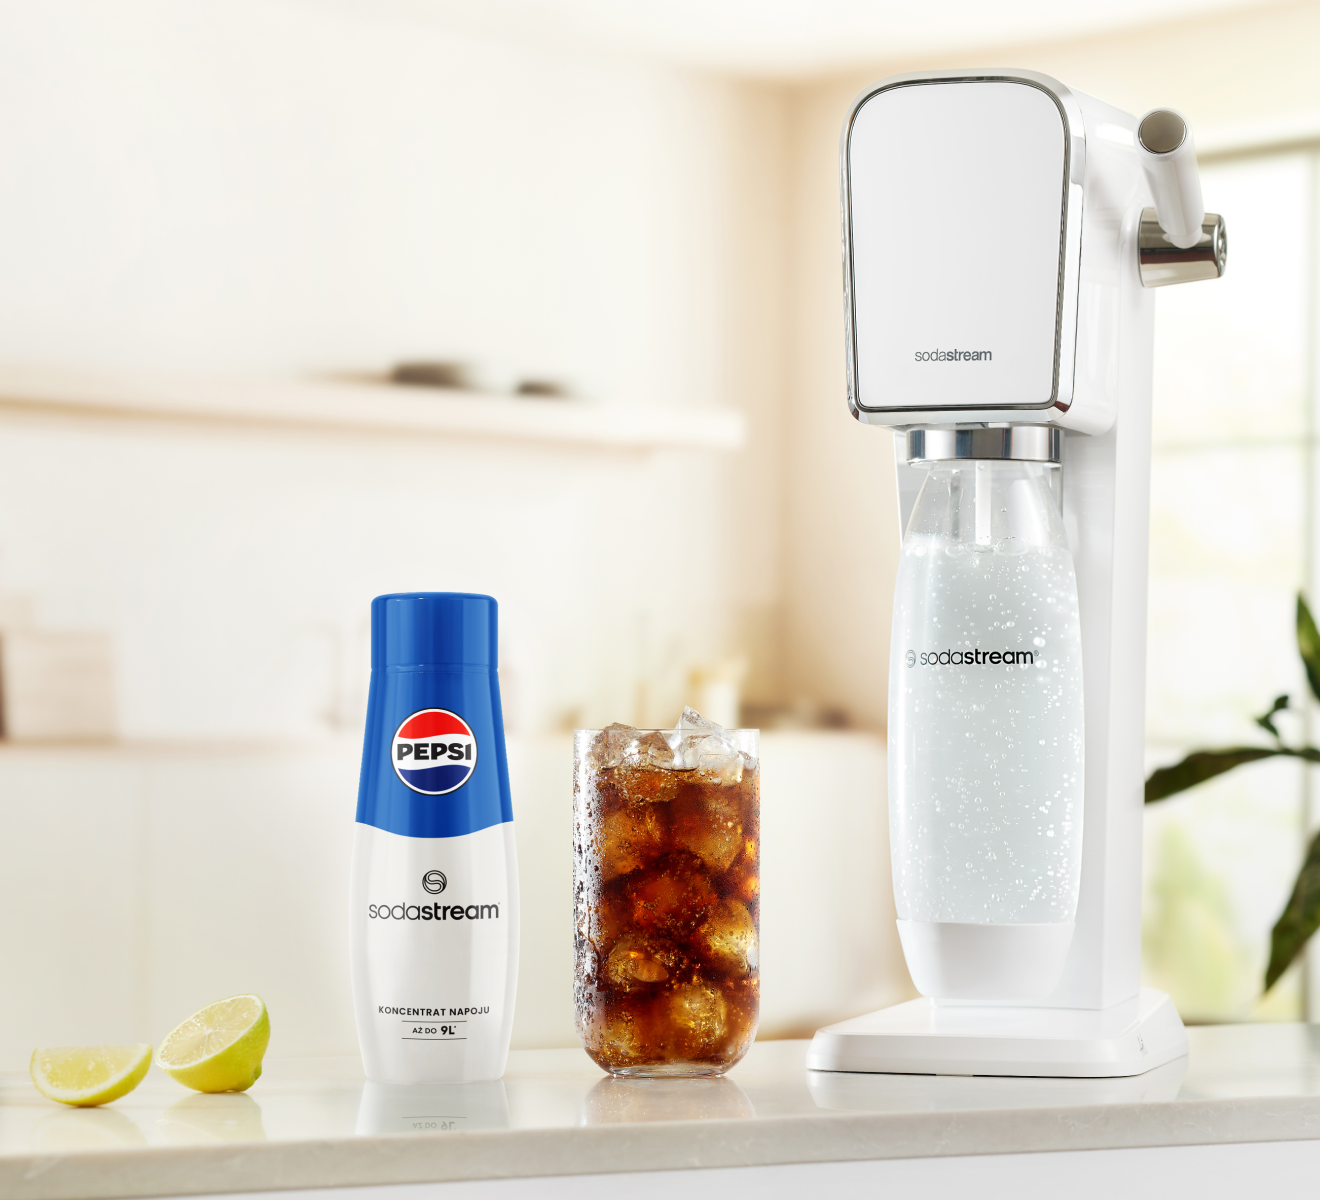 Saturator SodaStream podczas gazowania wody. Obok stoi sok Pepsi.